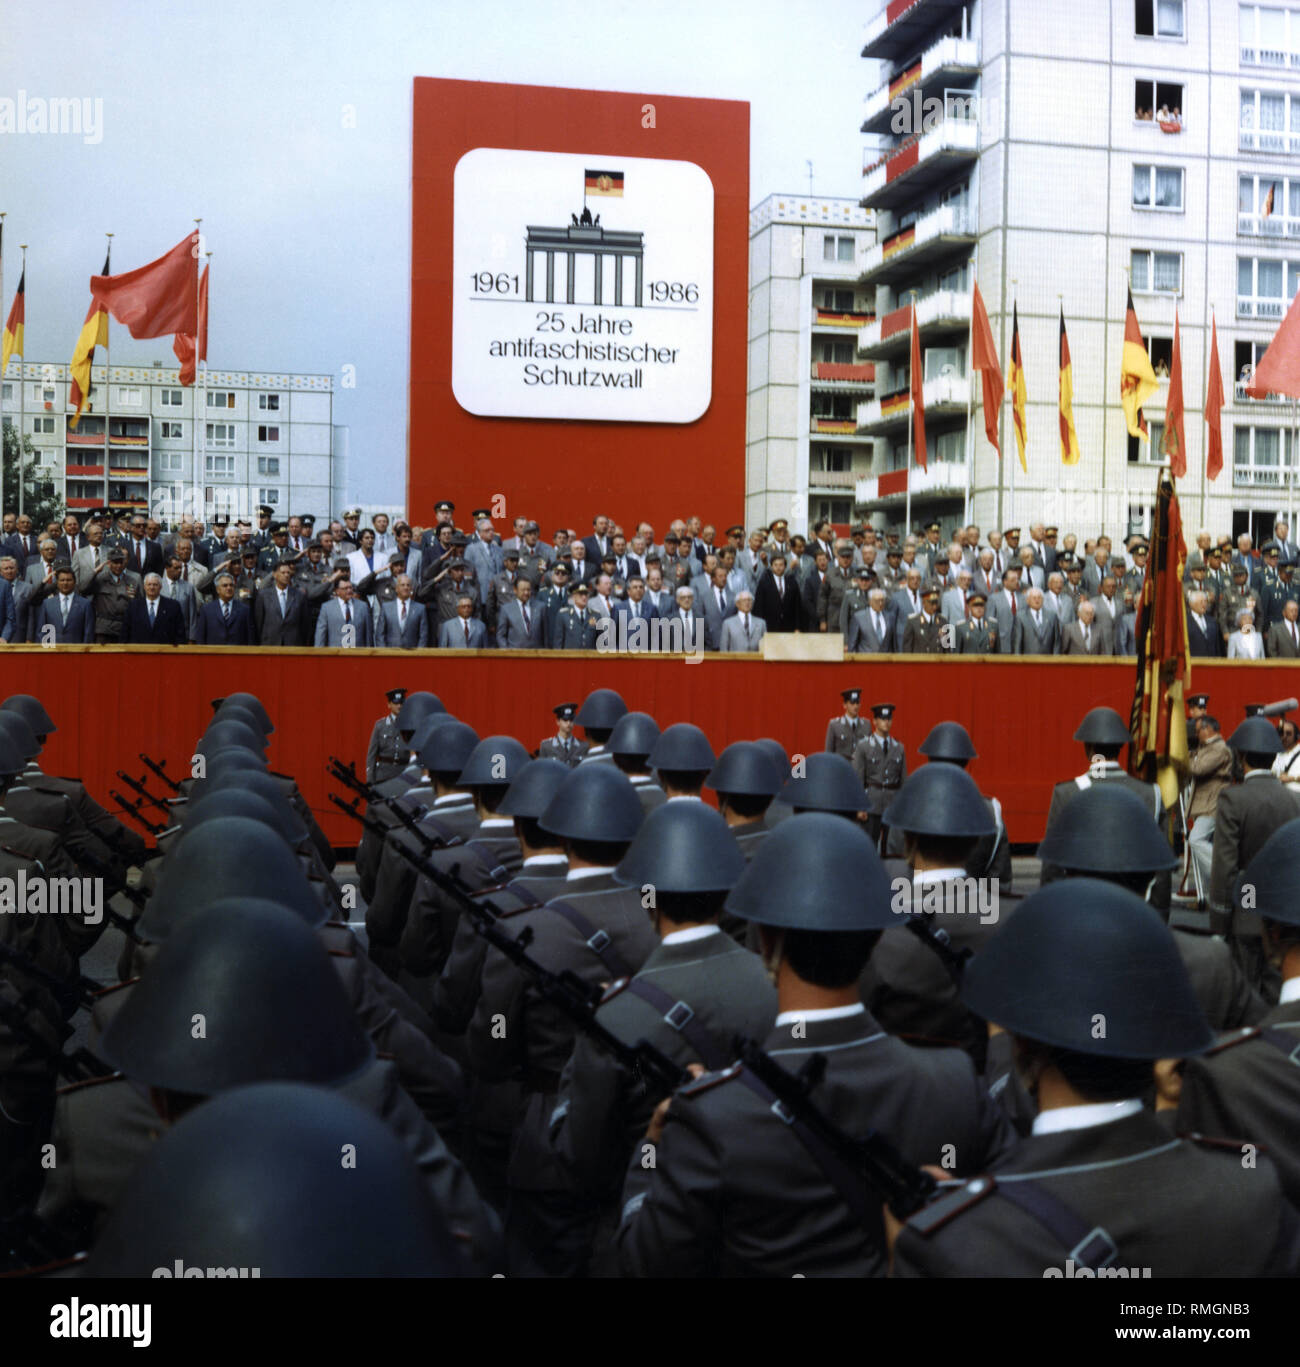 Le stand VIP aux Célébrations de la "25 ans du mur de Berlin". Dans la première ligne, les membres du Bureau politique du SED, Erich Honecker (y compris sur la gauche à côté de la pupitre). Au premier plan, des soldats de l'ANB, dans le cadre d'une parade militaire. Banque D'Images